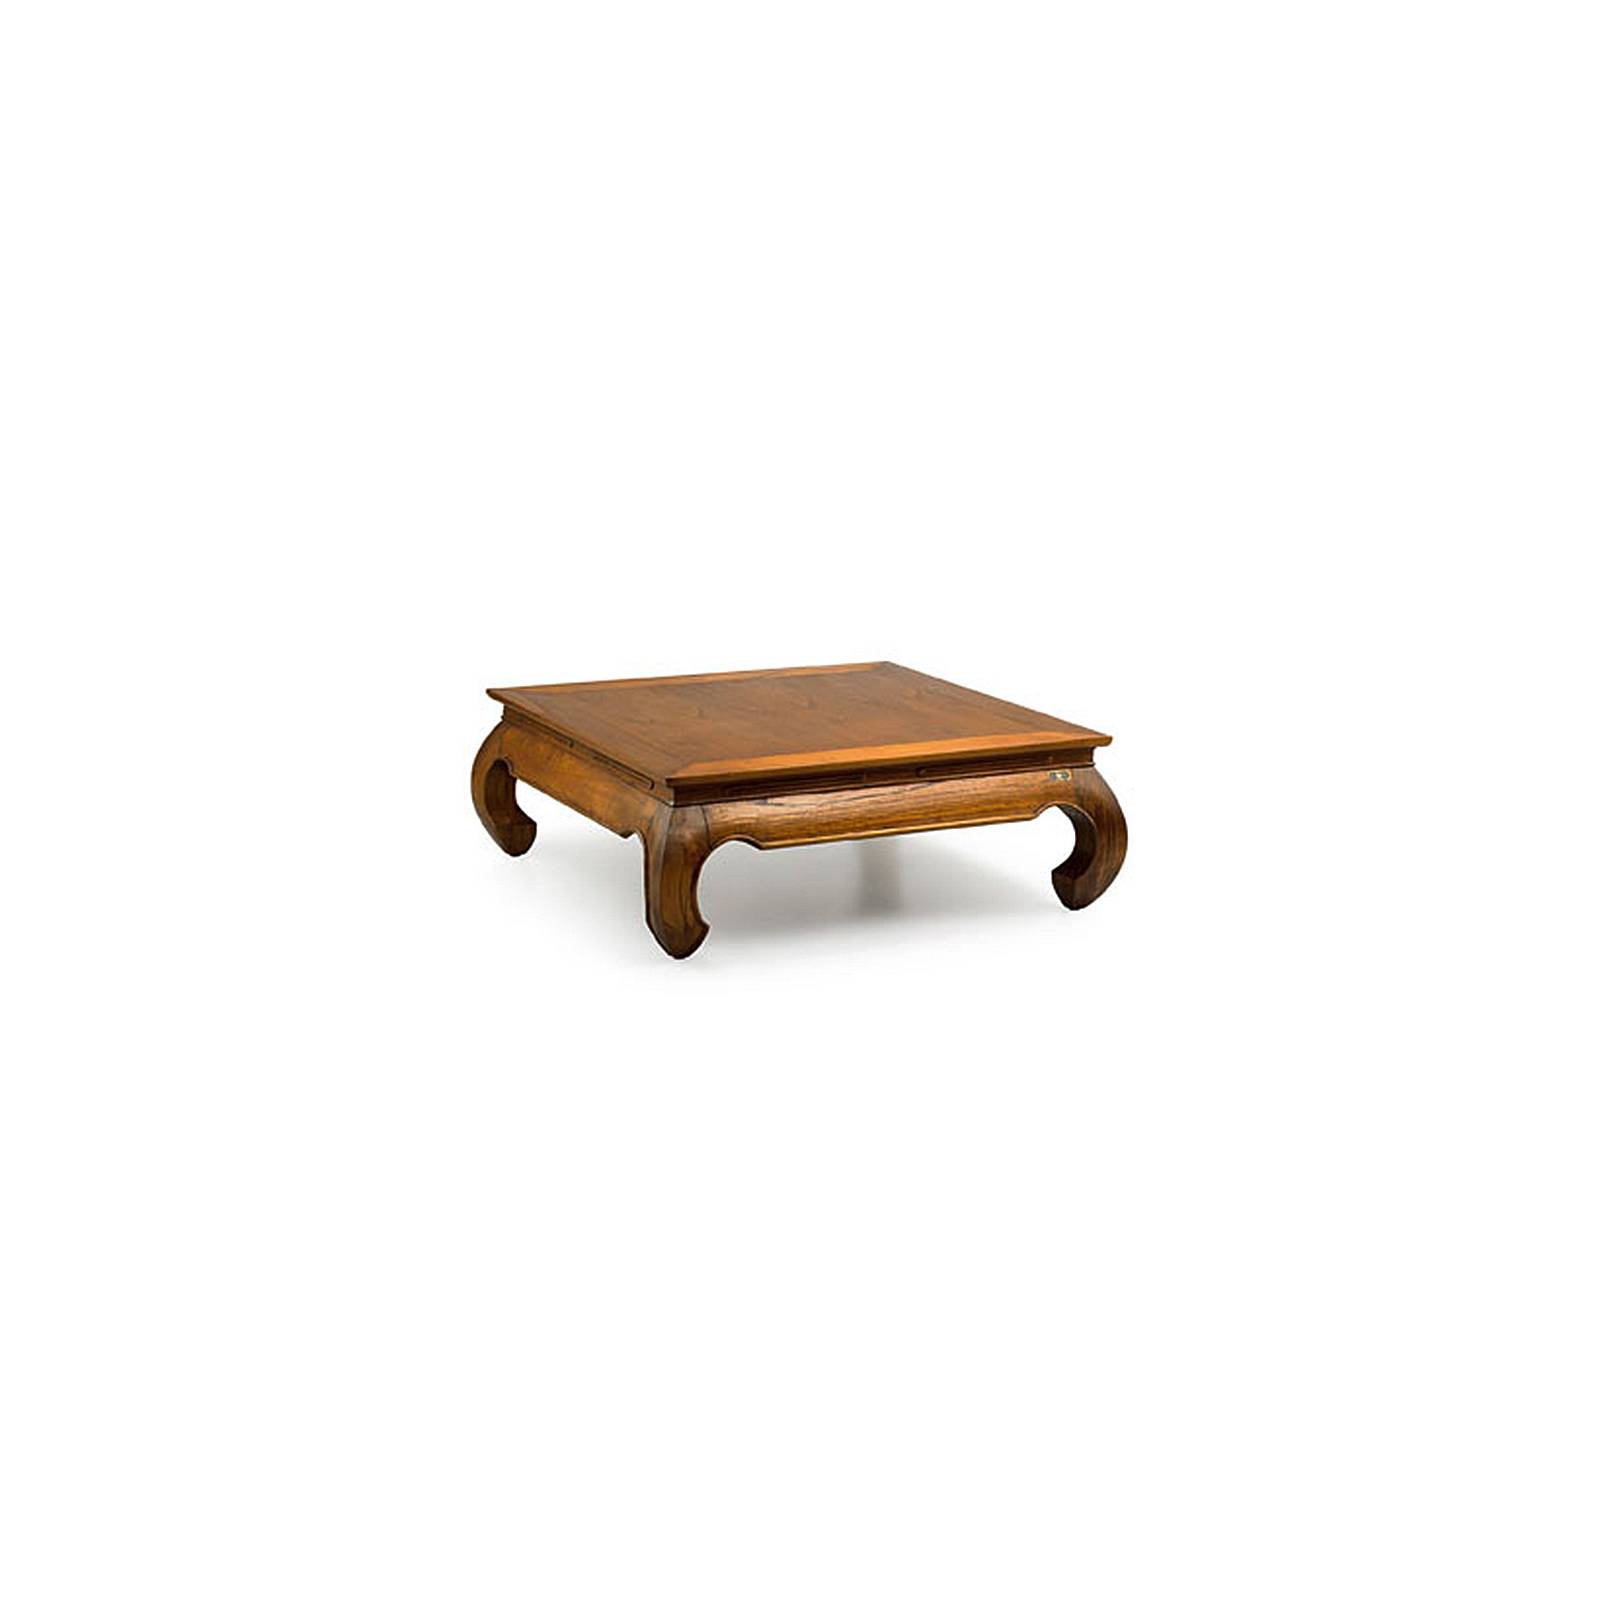 Table Basse Opium GM Tali Mindy - meuble bois exotique